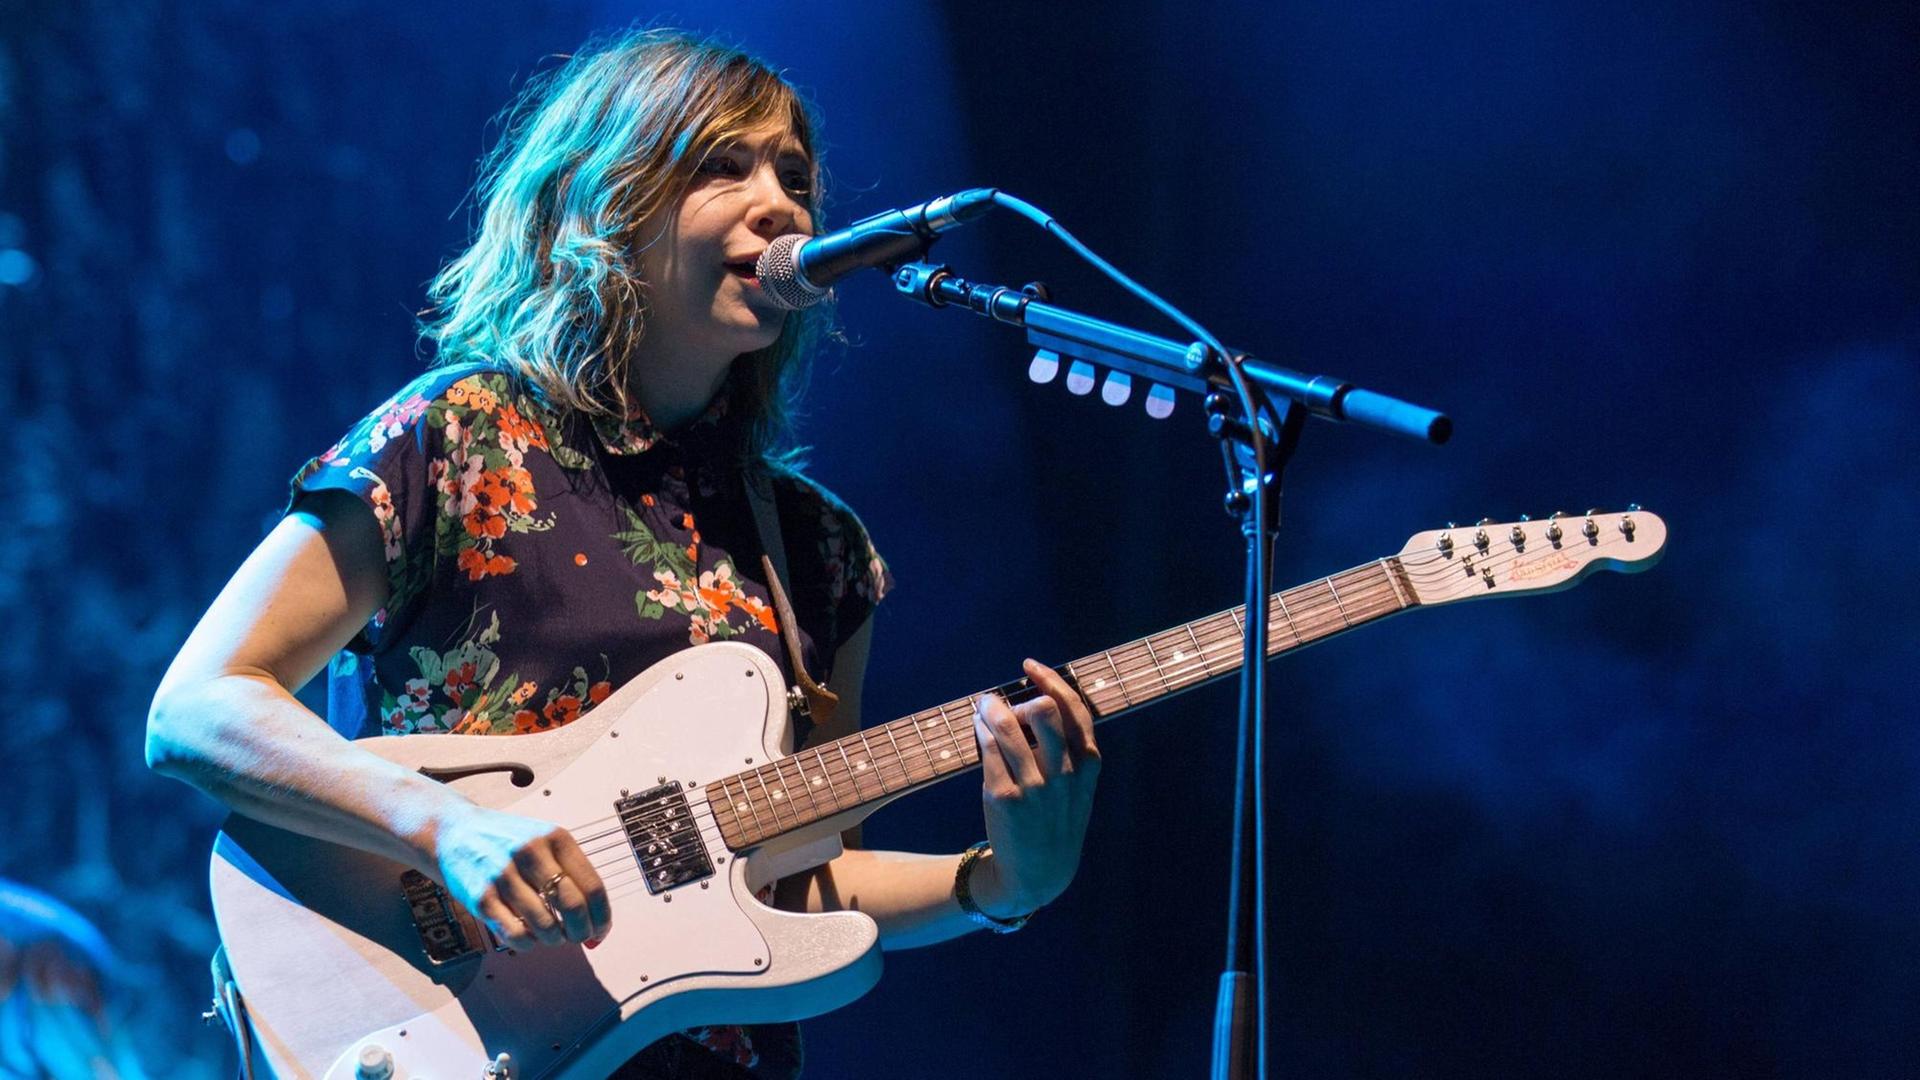 Carrie Brownstein, Gitarristin und Sängerin der US-amerikanischen Indie-Rock-Band "Sleater-Kinney", bei einem Konzert am 18. September 2016 in Chicago, Illinois.